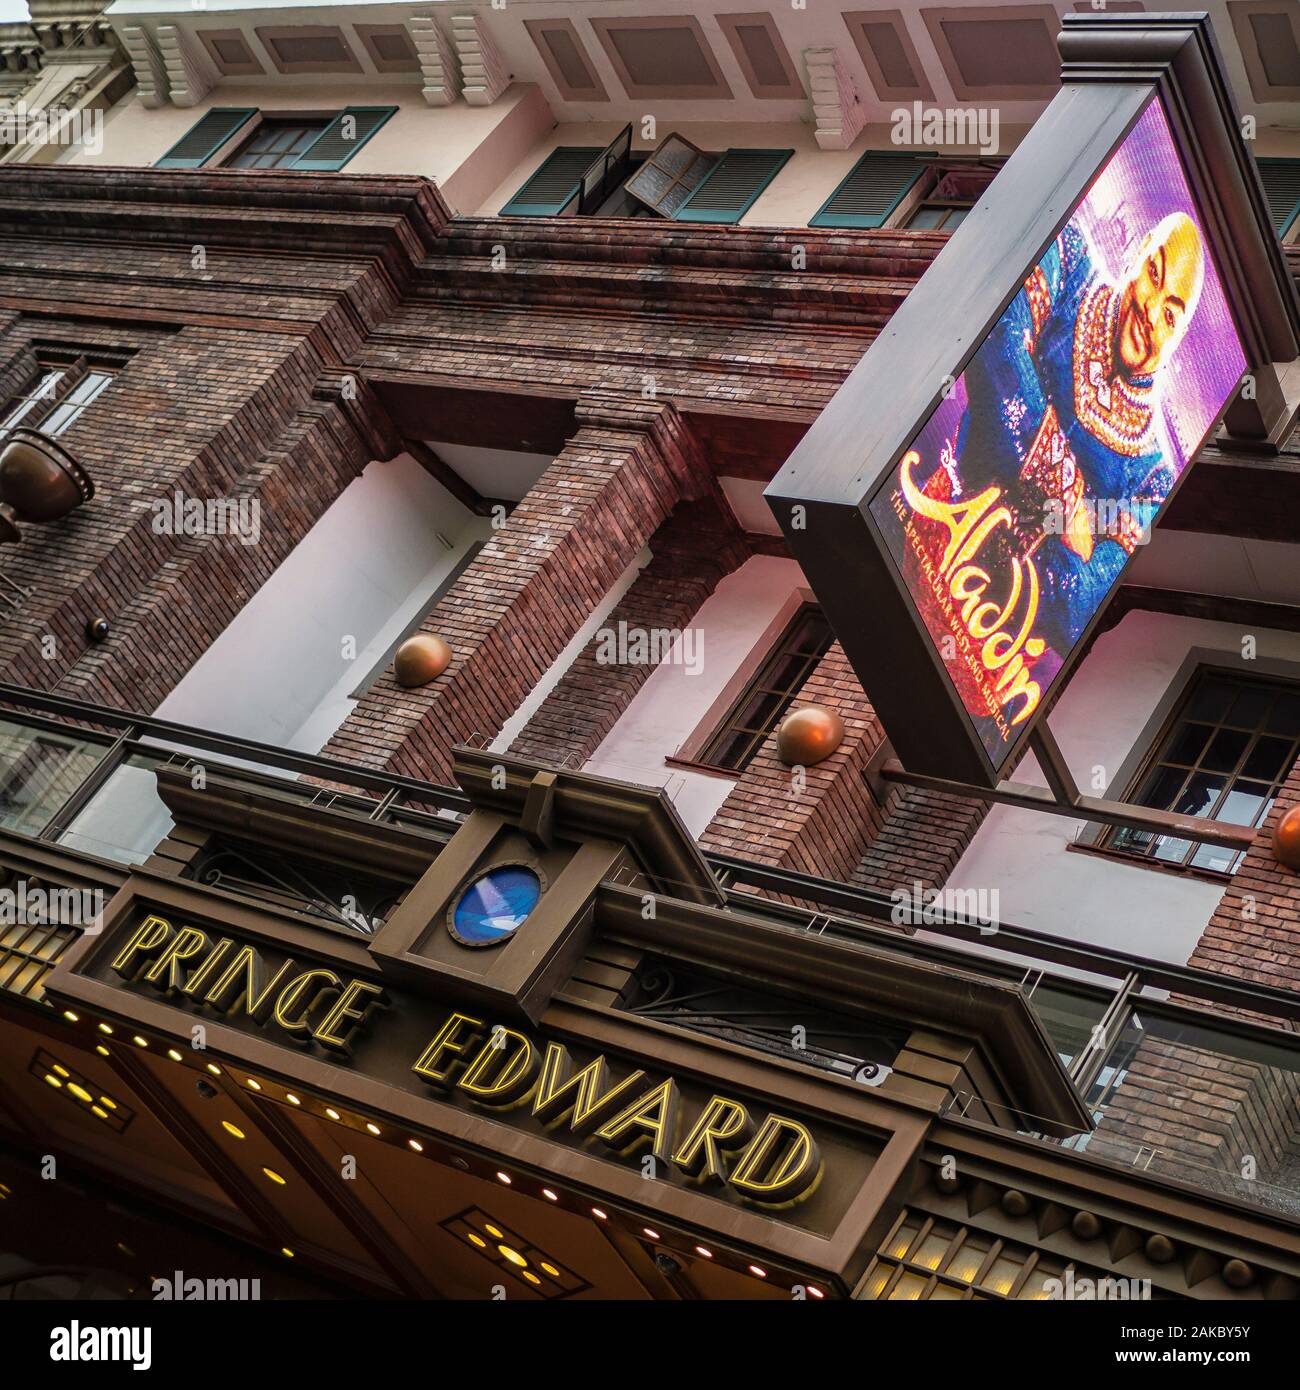 WESTEND, LONDON: Prince Edward Theatre in der Old Compton Street mit Plakat für Aladdin Musical Show Stockfoto